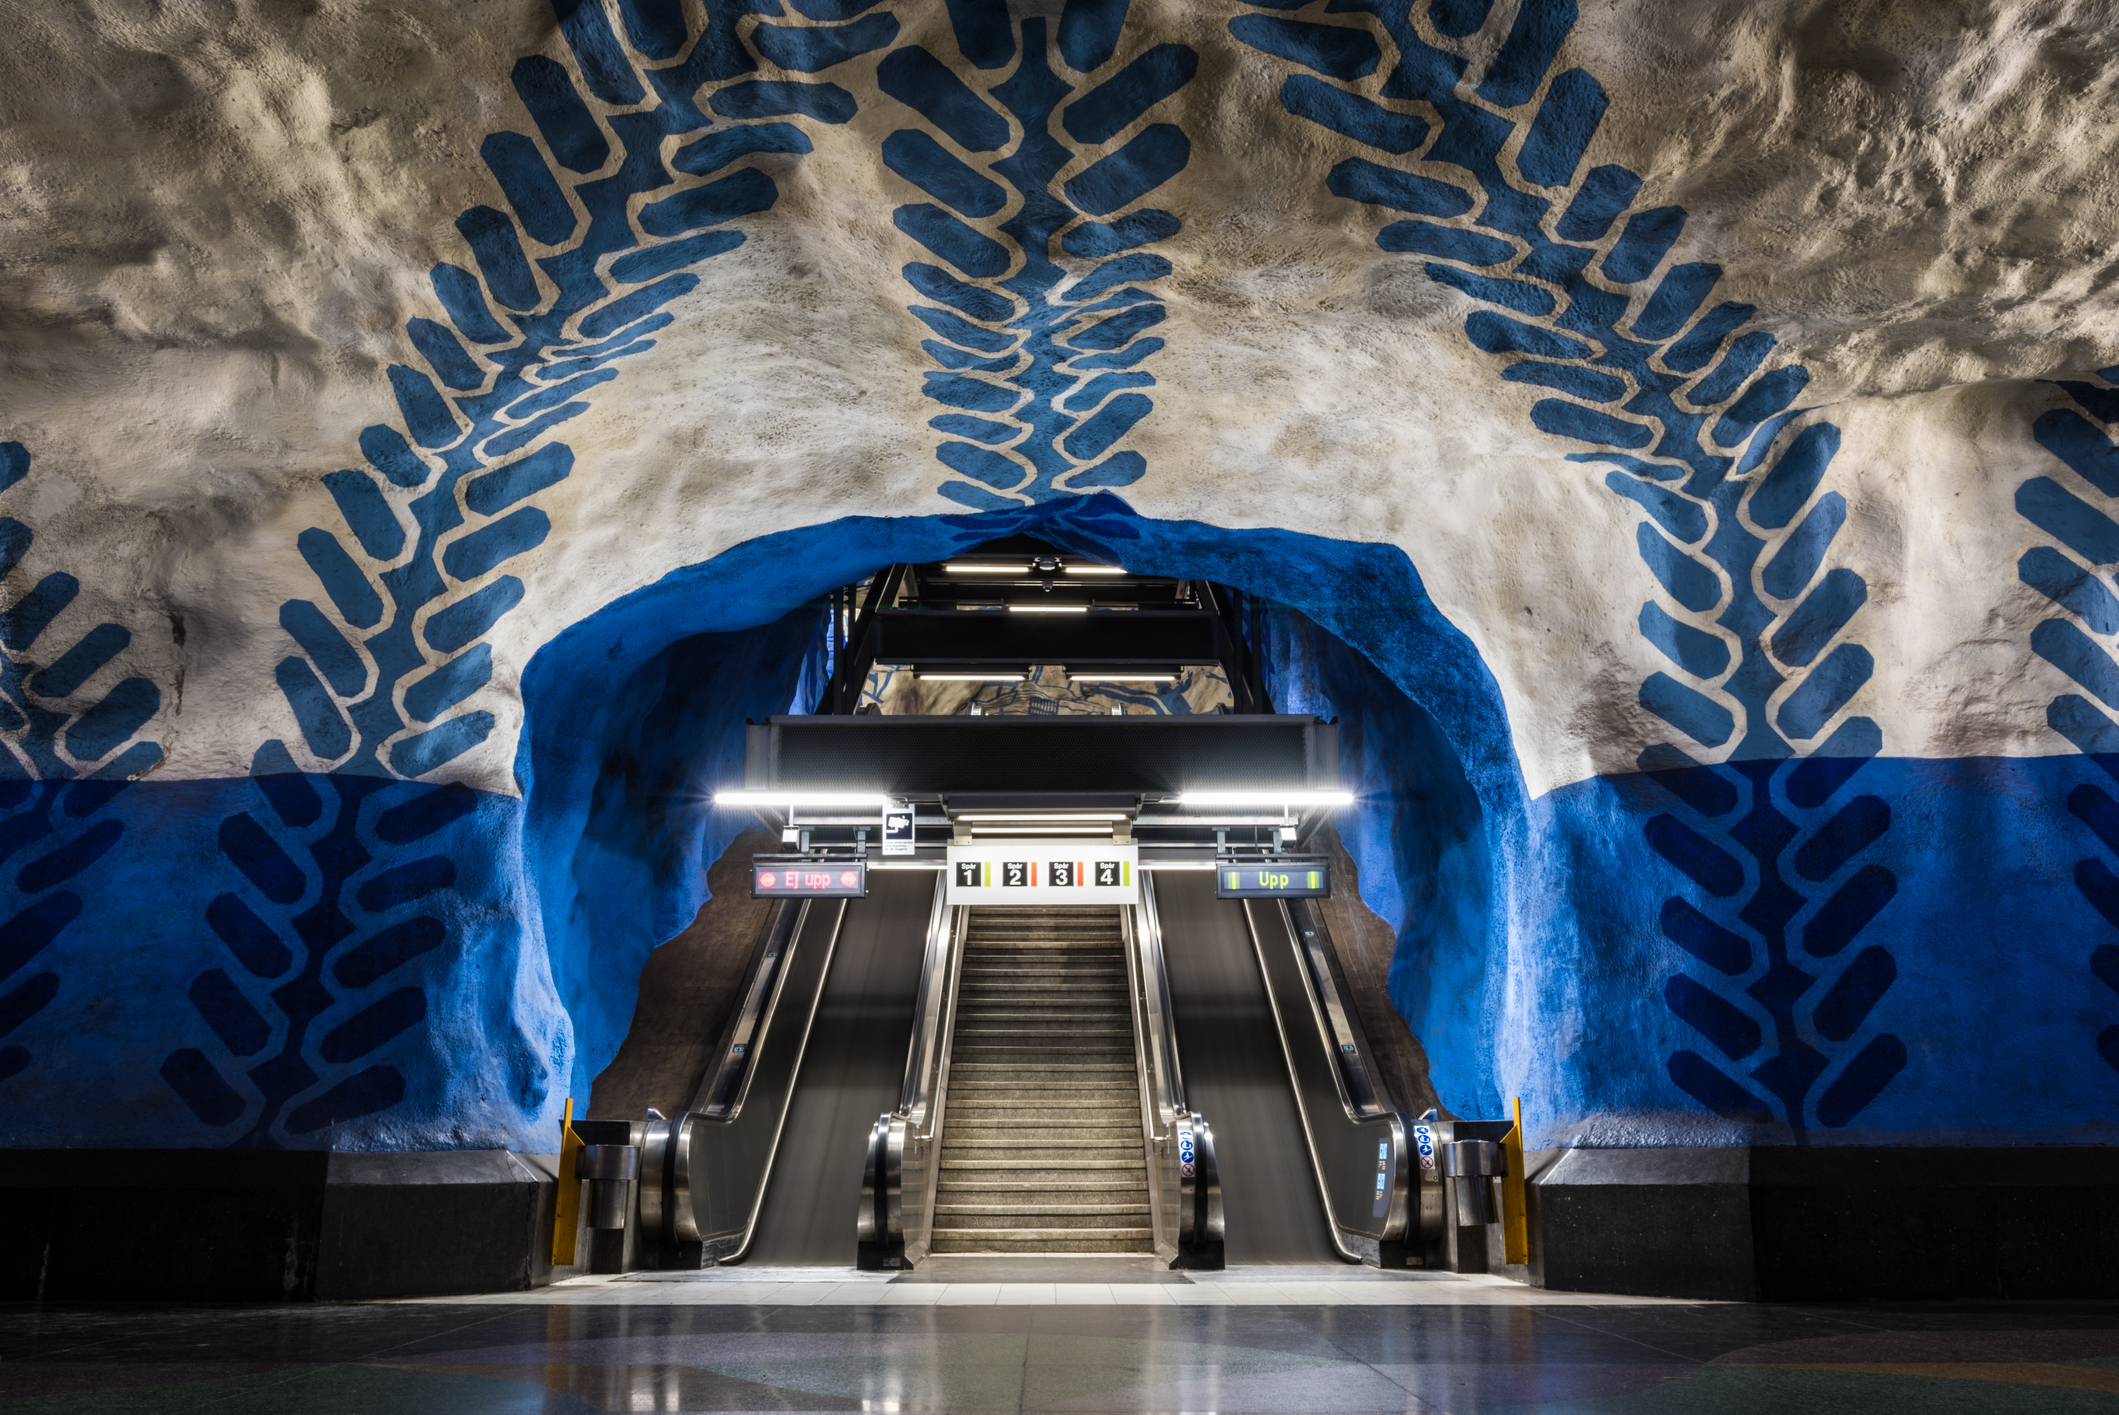 Стокхолм, Швеция<br />
Стокхолмското метро  включва три основни линии със сто метростанции, 48 от които са подземни, а 52 са на земната повърхност На 30 септември 1933 г. е поставено началото на подземния железопътен транспорт в Стокхолм, с прокопаването на тунел под Сьодермалм, свързващ влакови композиции от обществения градски транспорт. 